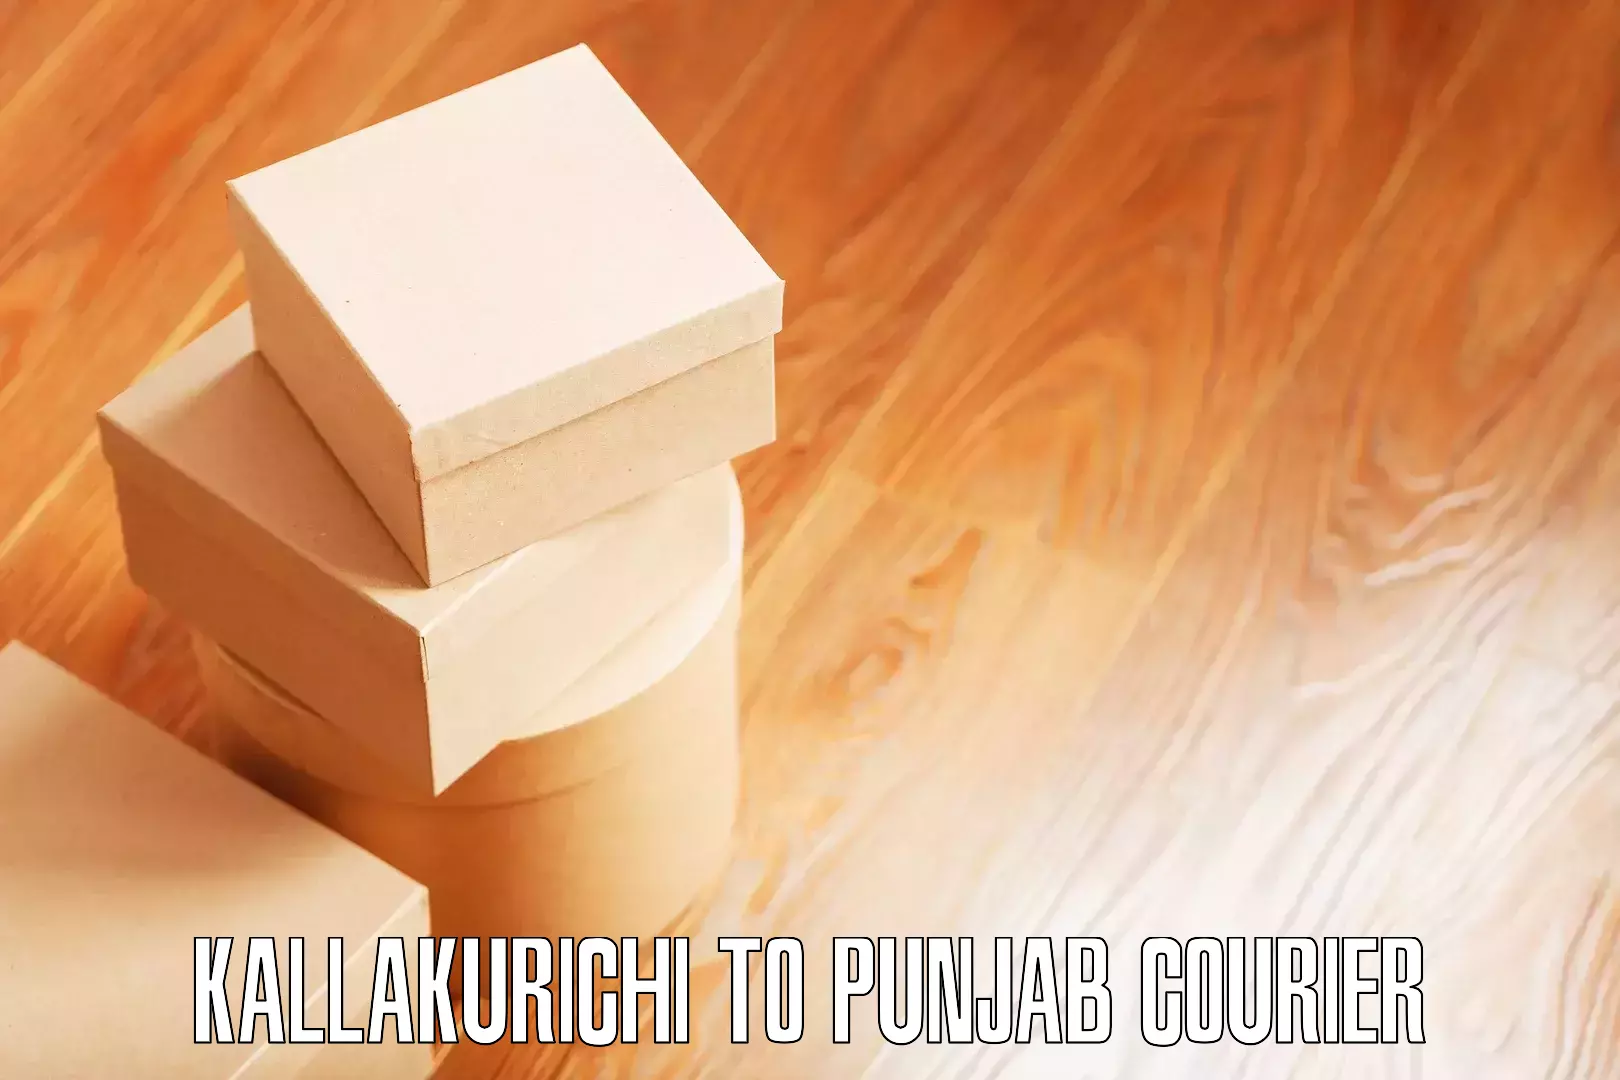 Furniture moving strategies Kallakurichi to Garhshankar